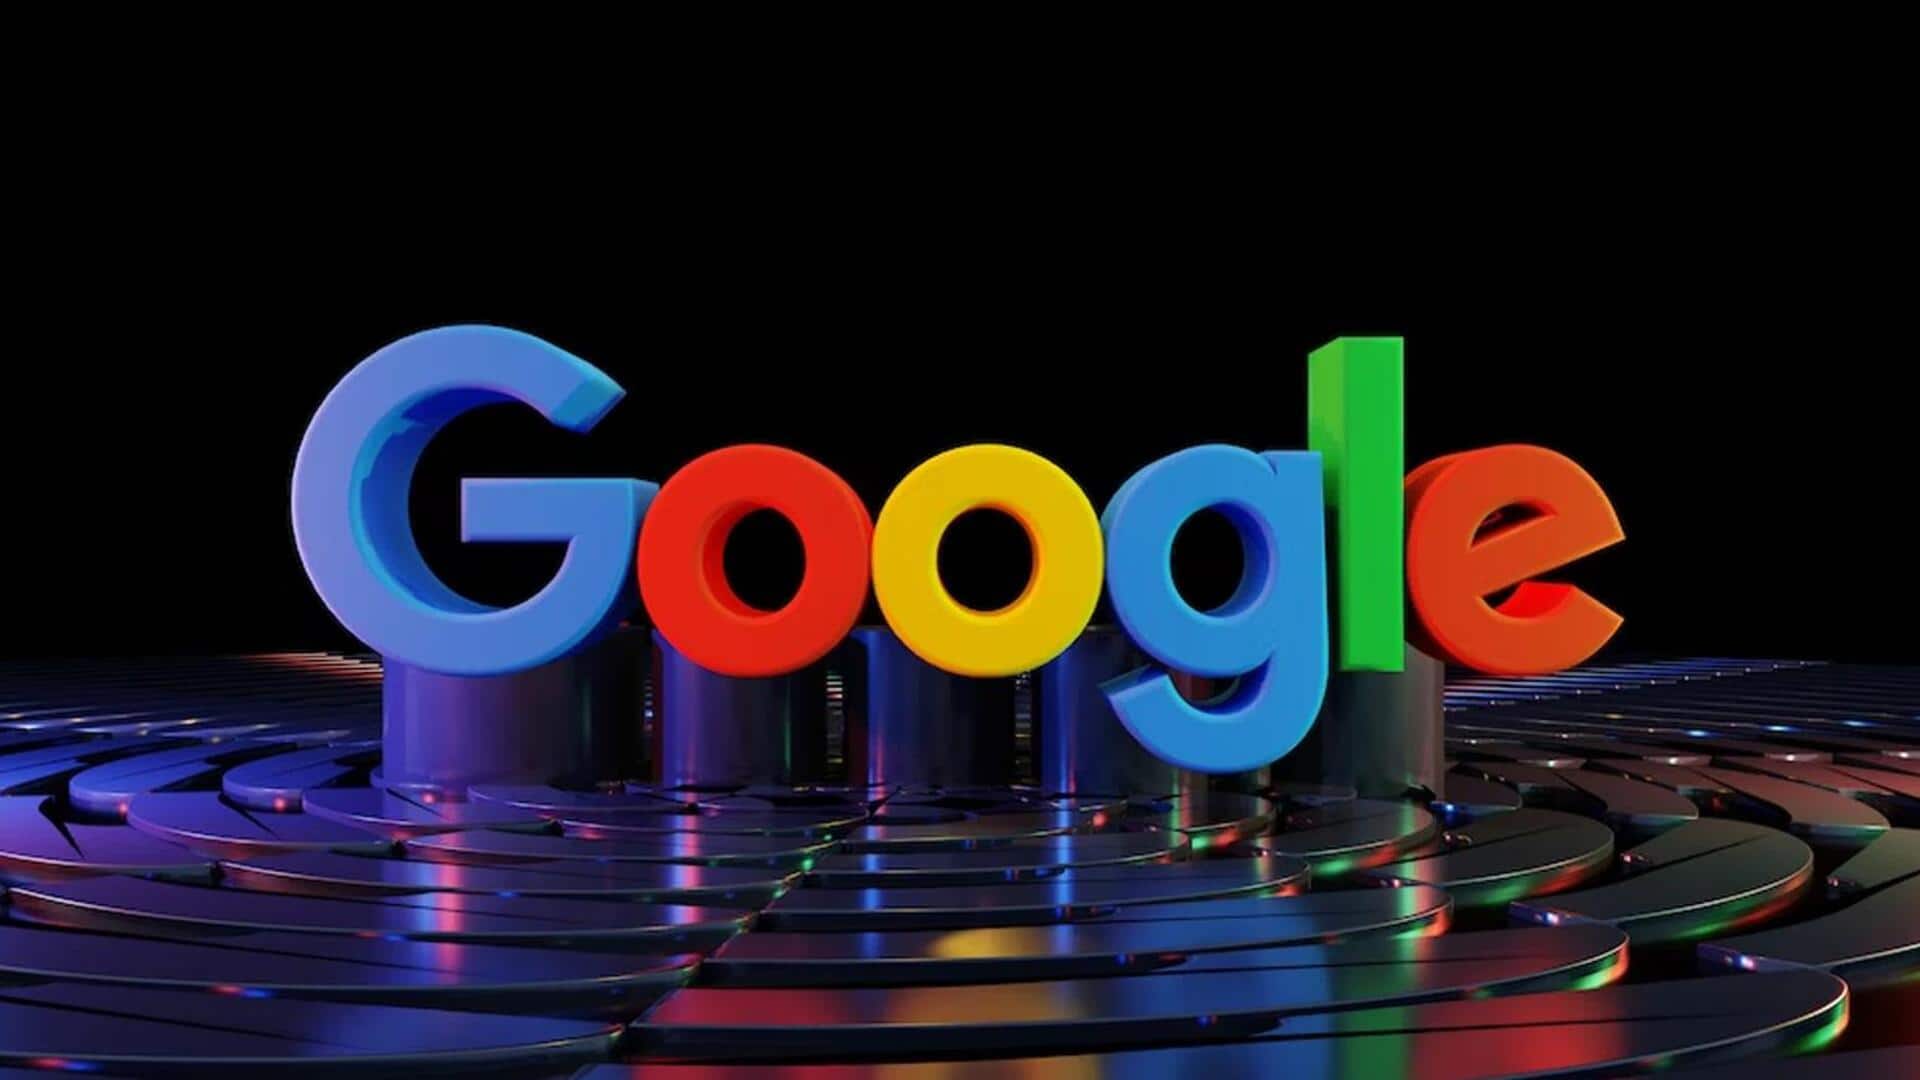 गूगल सैकड़ों कर्मचारियों की कर रही छंटनी, इन विभागों पर पड़ेगा असर